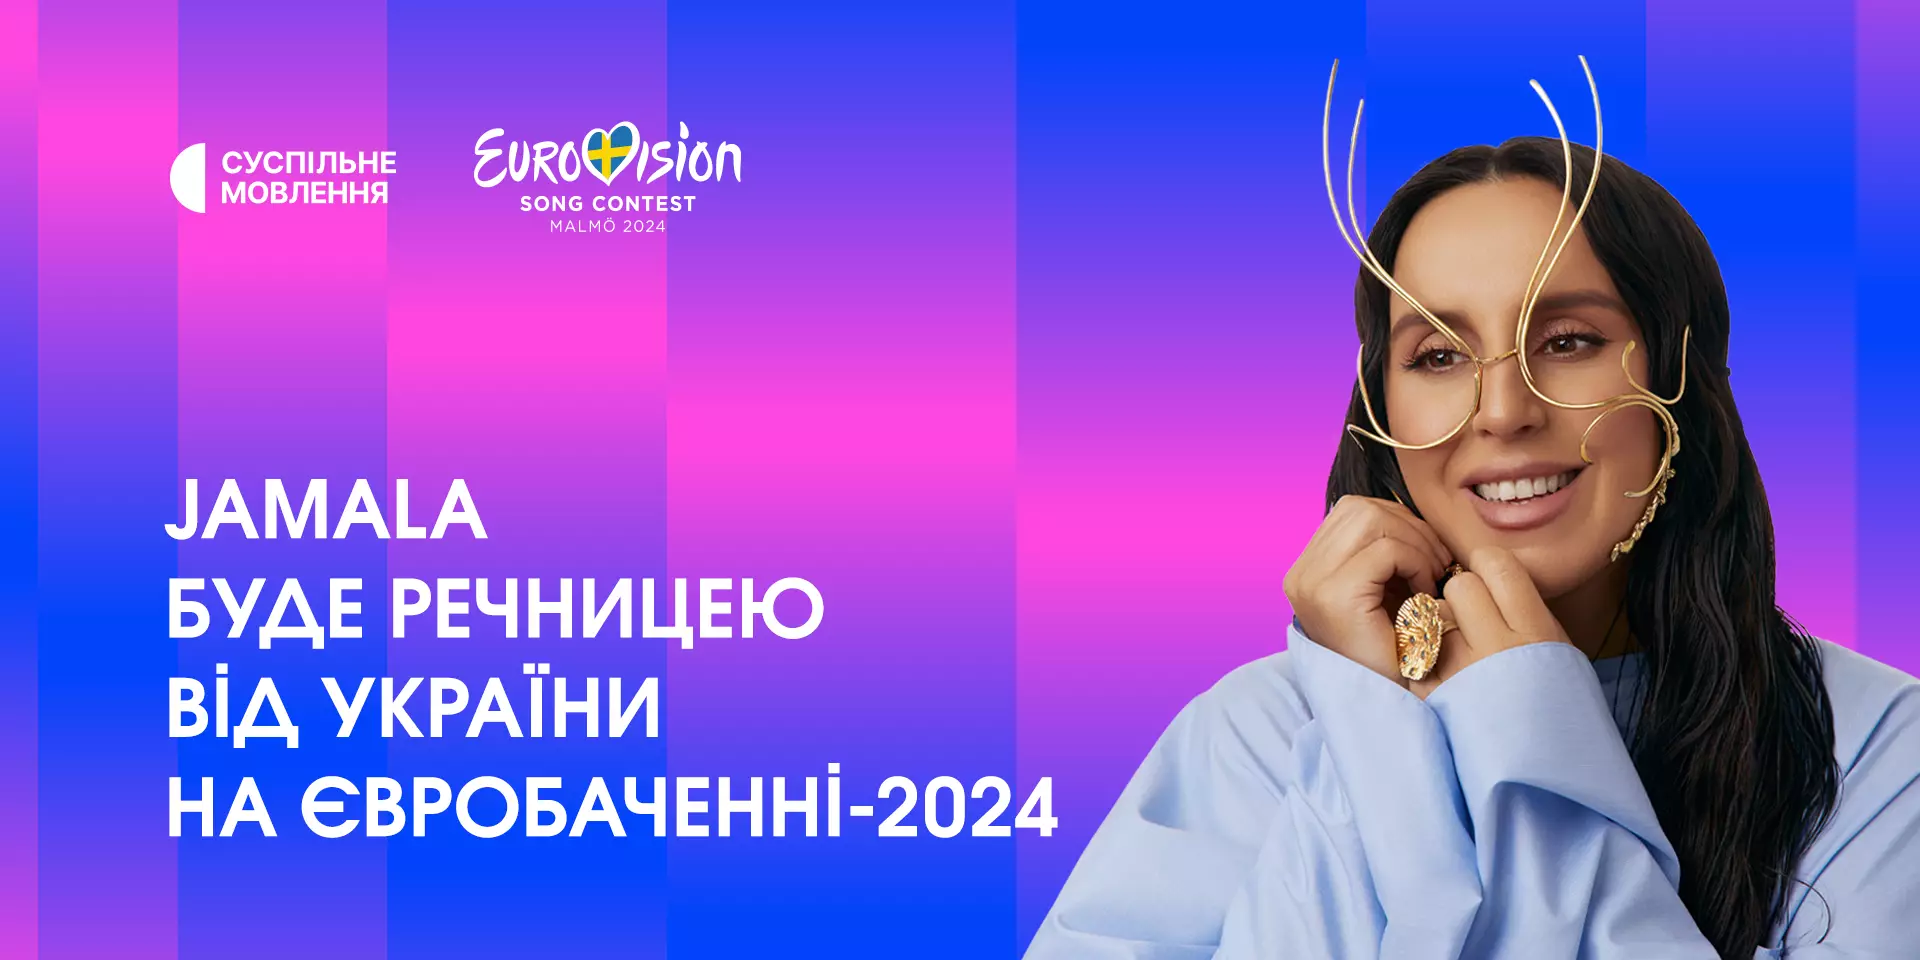 Речницею від України на «Євробаченні-2024» буде Jamala